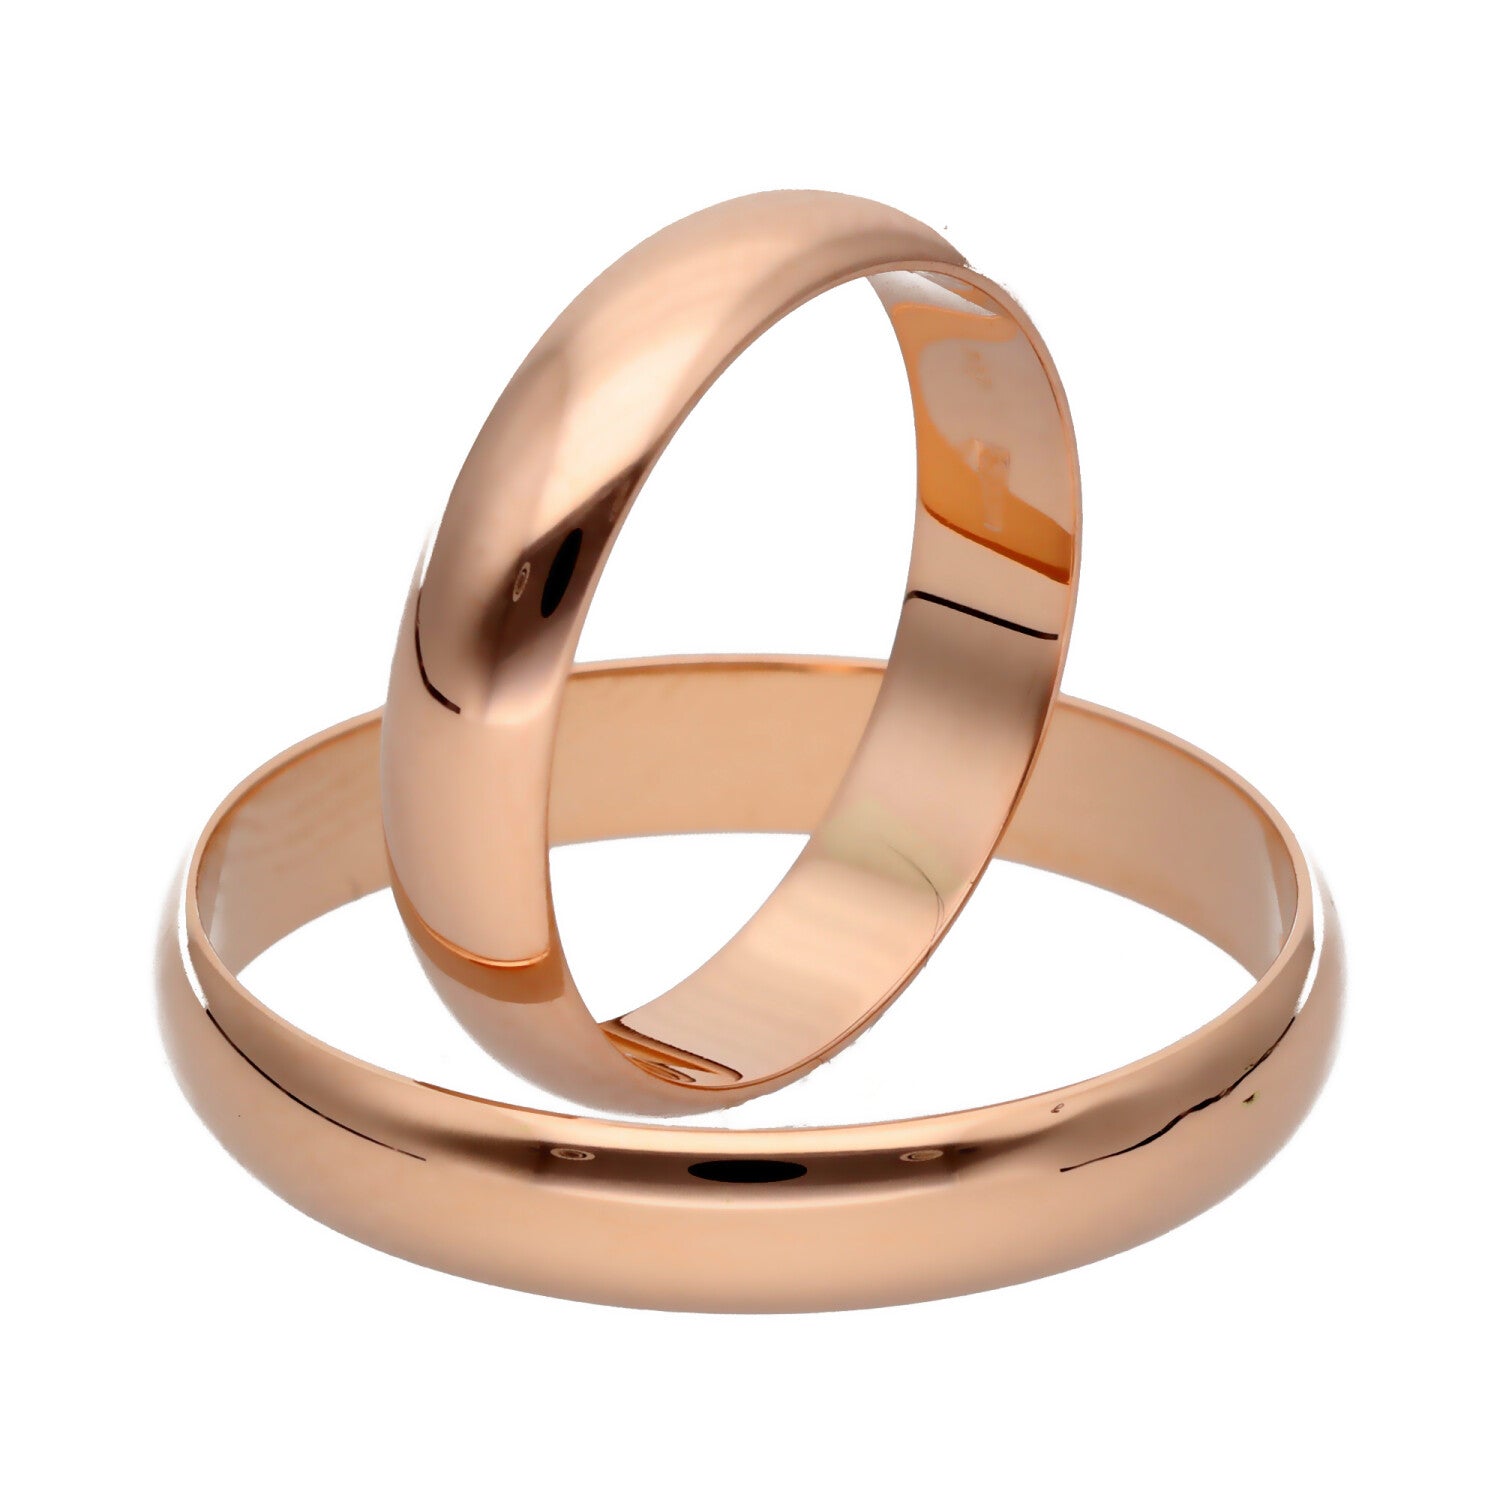 Klasikiniai vestuviniai žiedai 5mm pločio su komfortu vestuviniaiziedai.lt